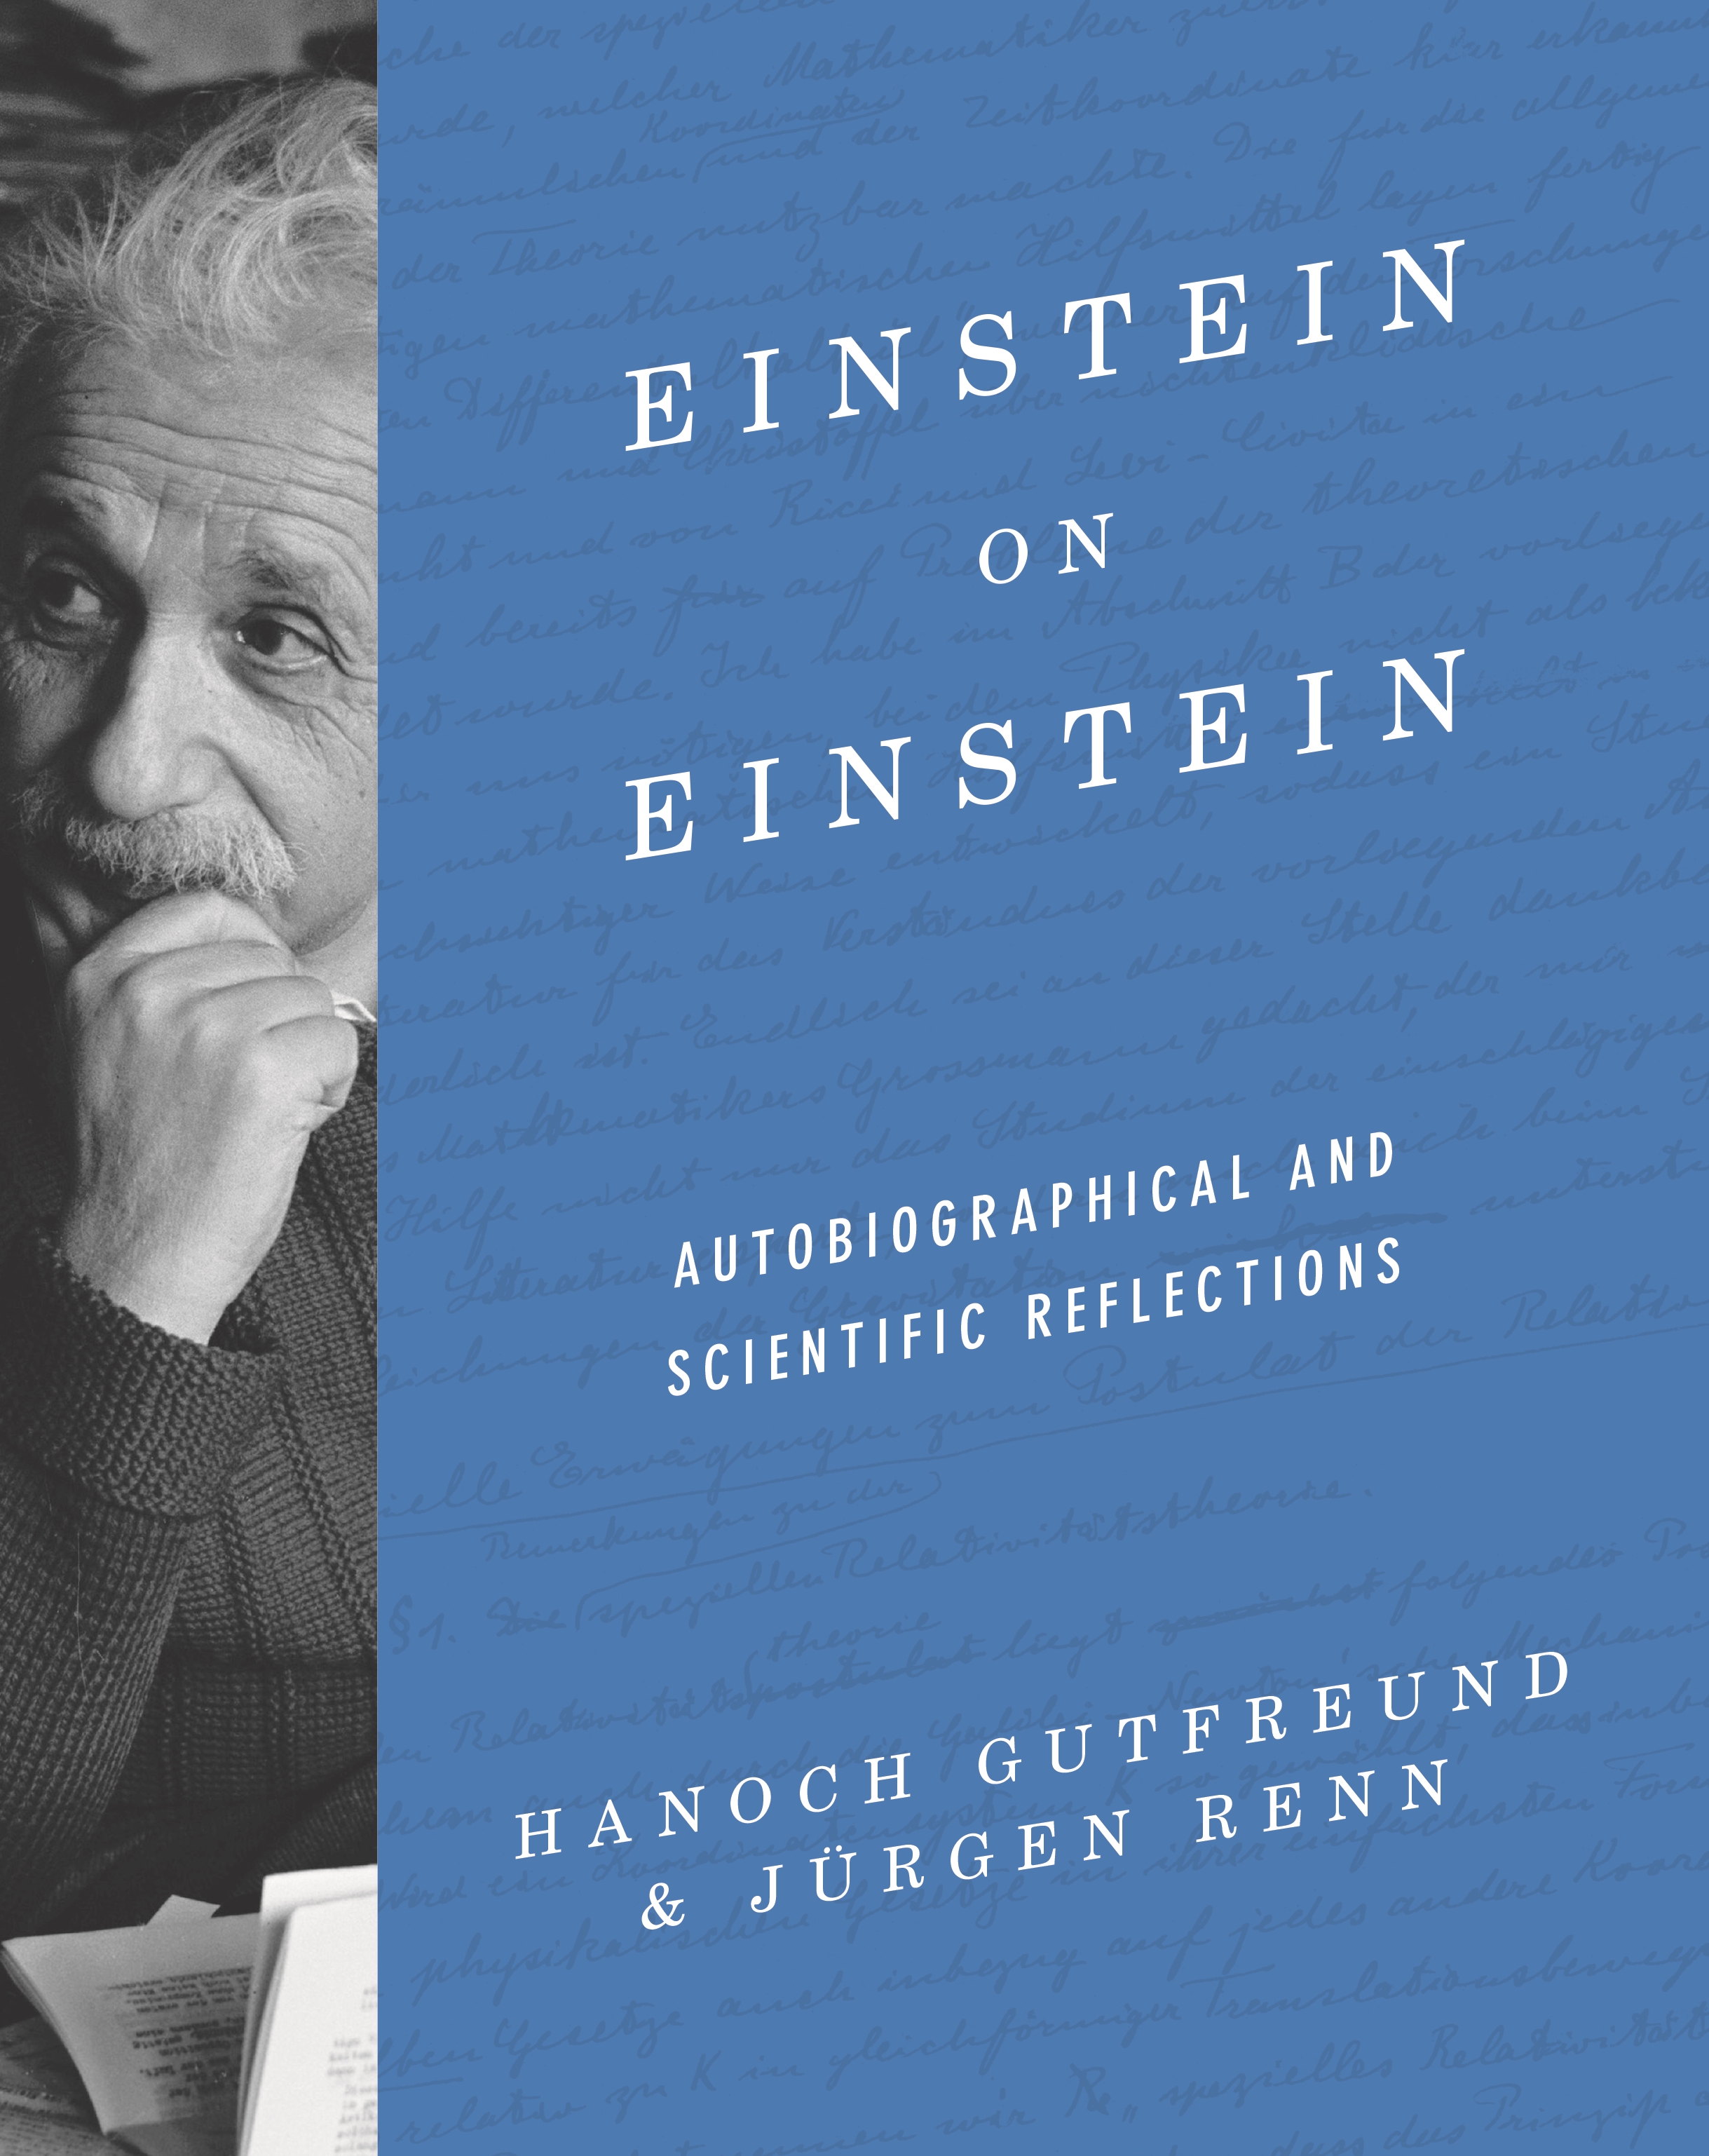 book cover: Hanoch Gutfreund/ Jürgen Renn: Einstein on Einstein (2020)